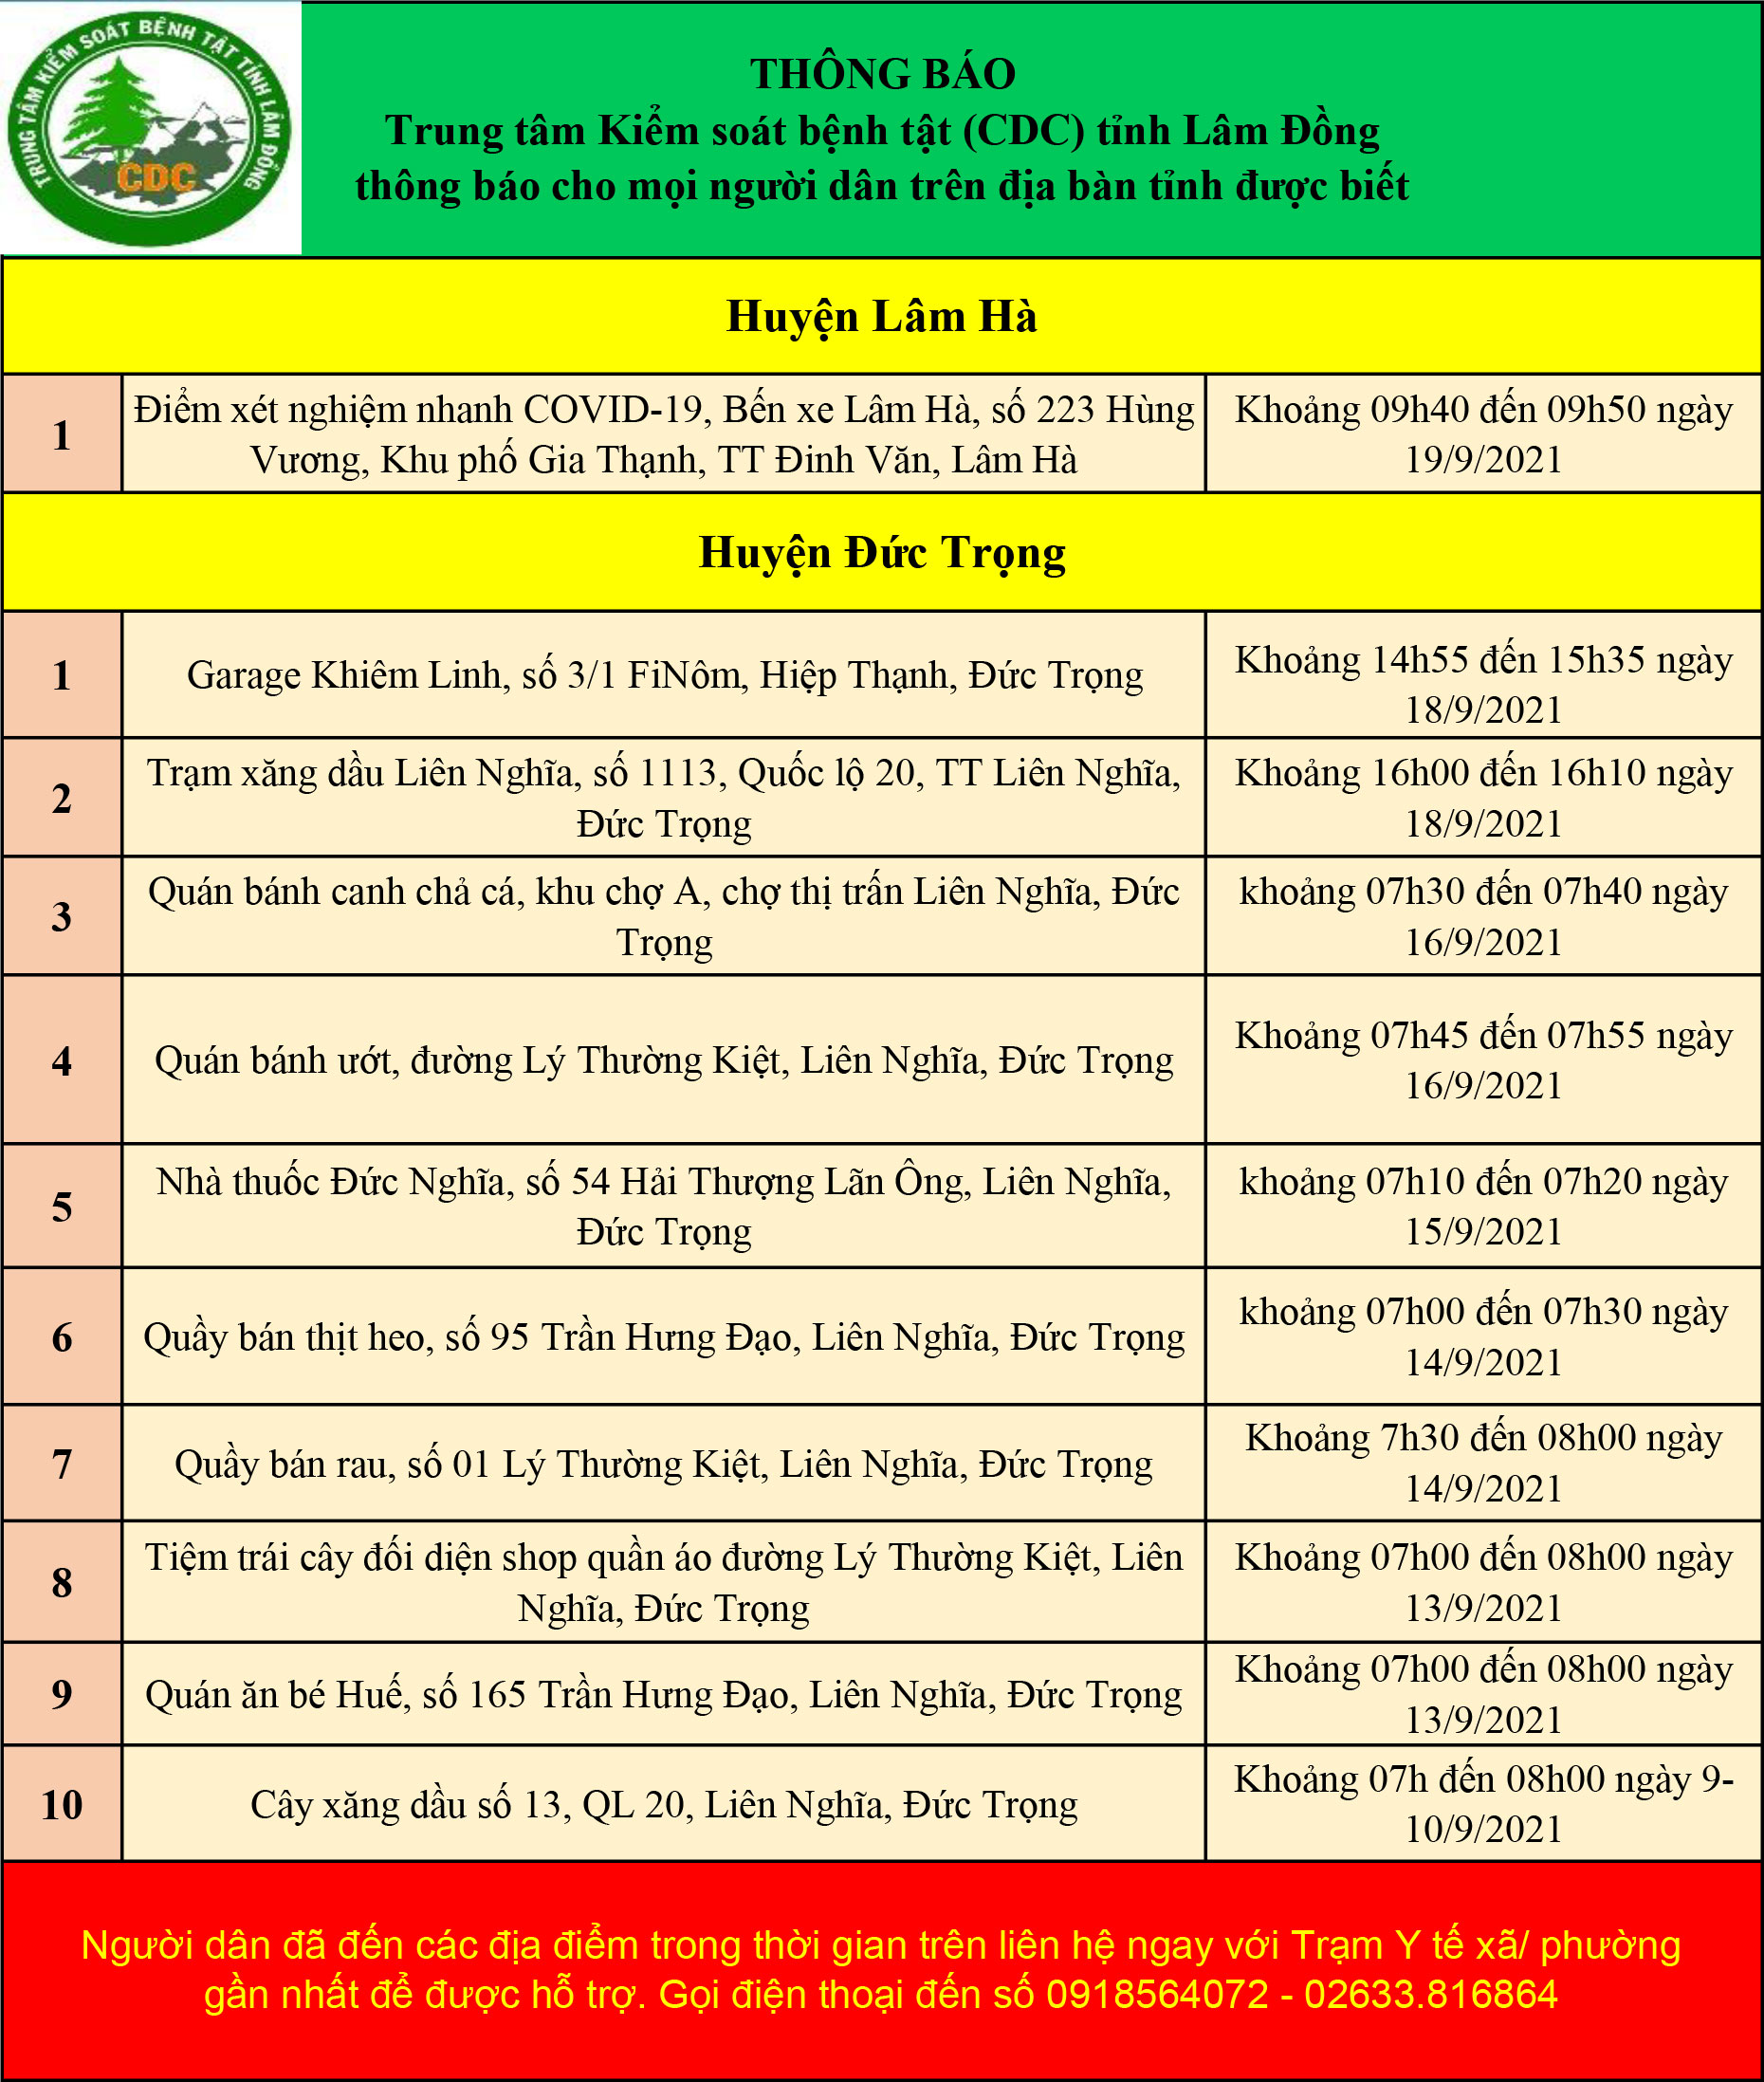 CDC tỉnh Lâm Đồng thông báo cho mọi người dân trên địa bàn tỉnh (cập nhật ngày 22/09/2021)